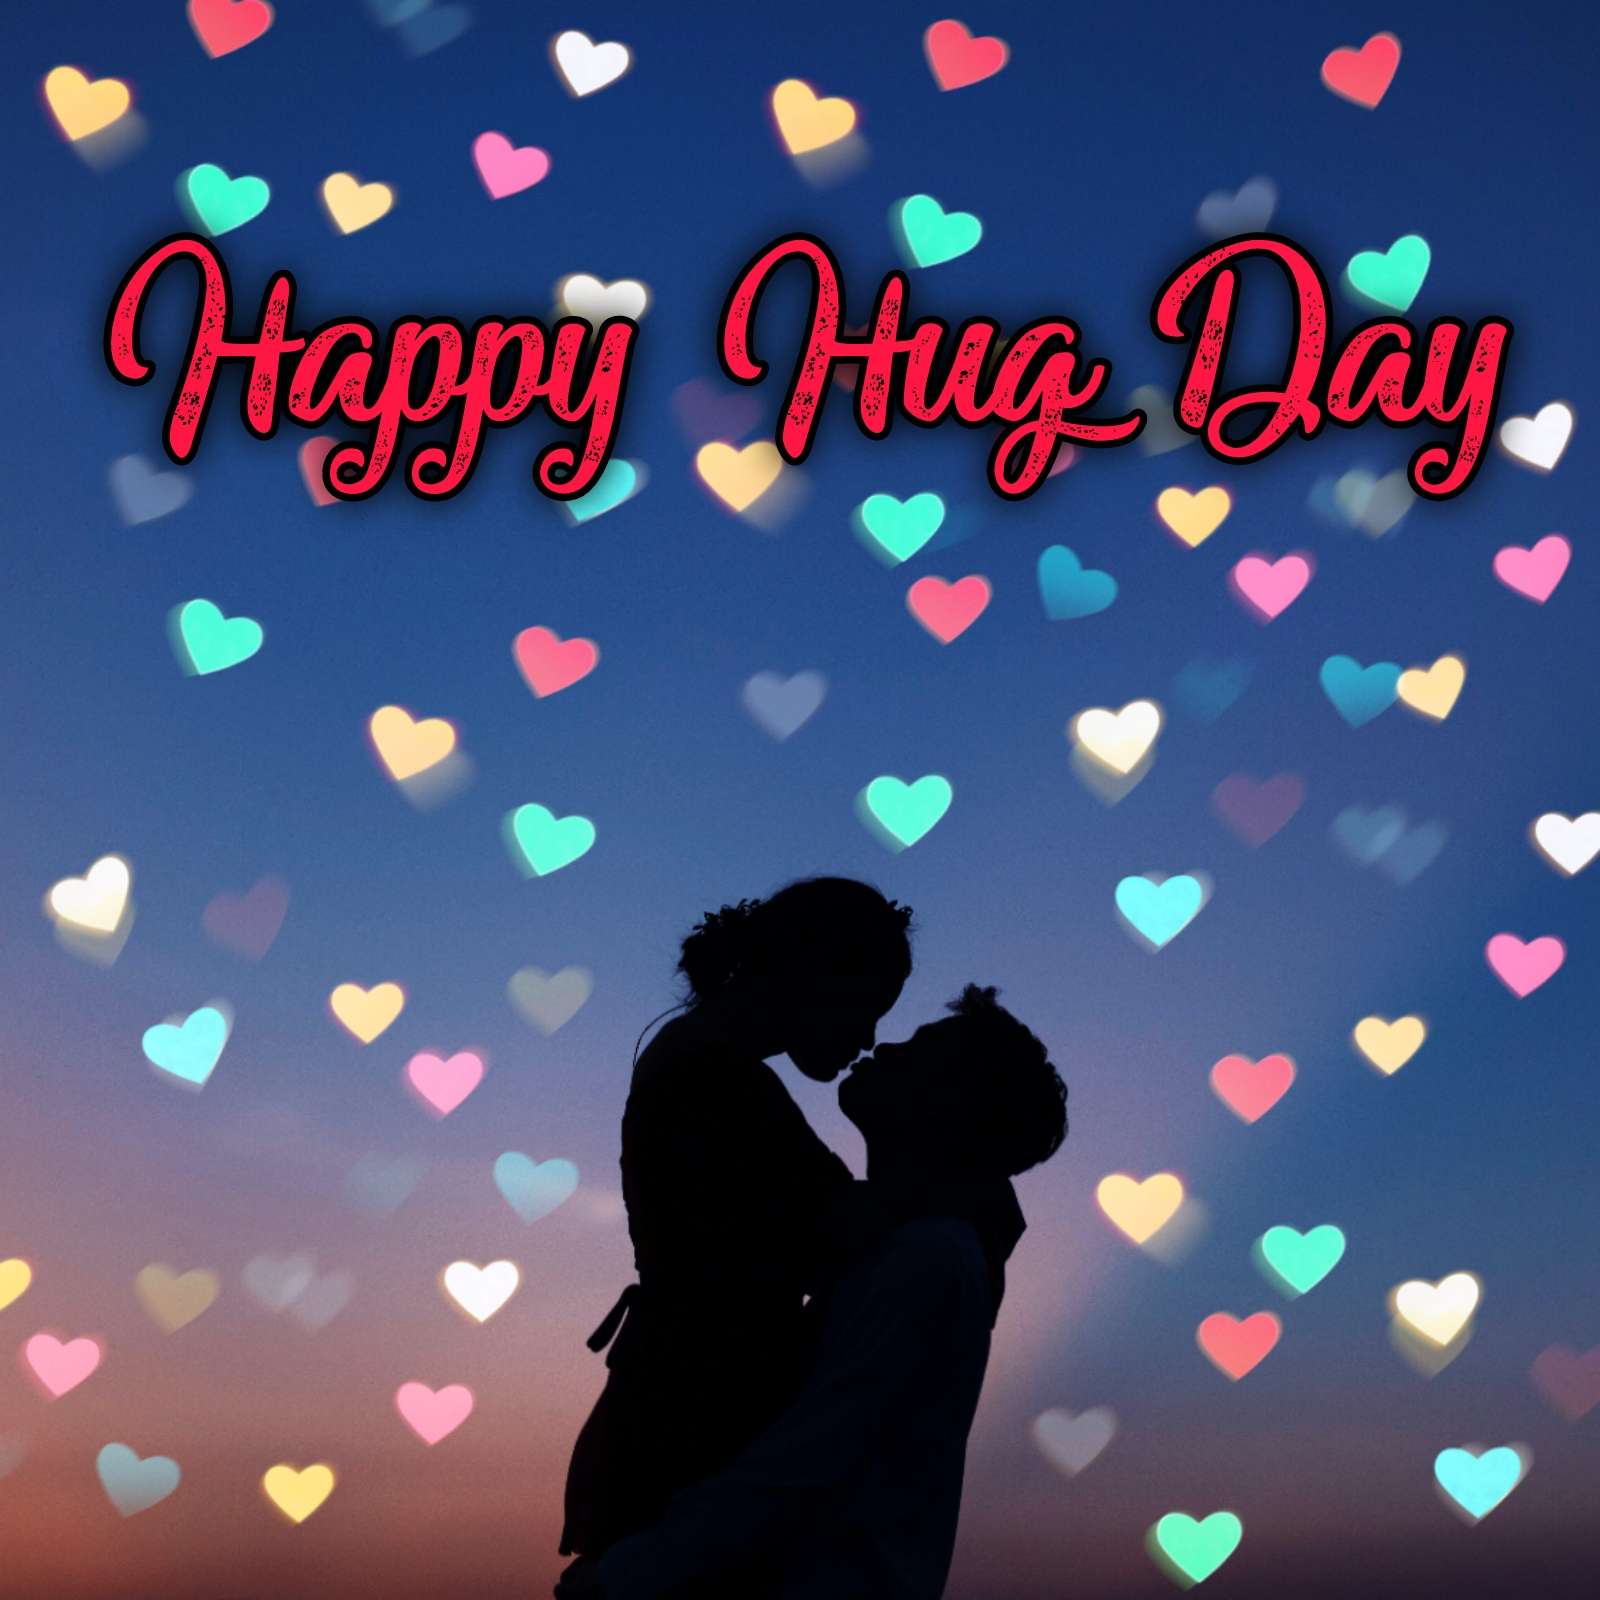 Hug Day Images Download